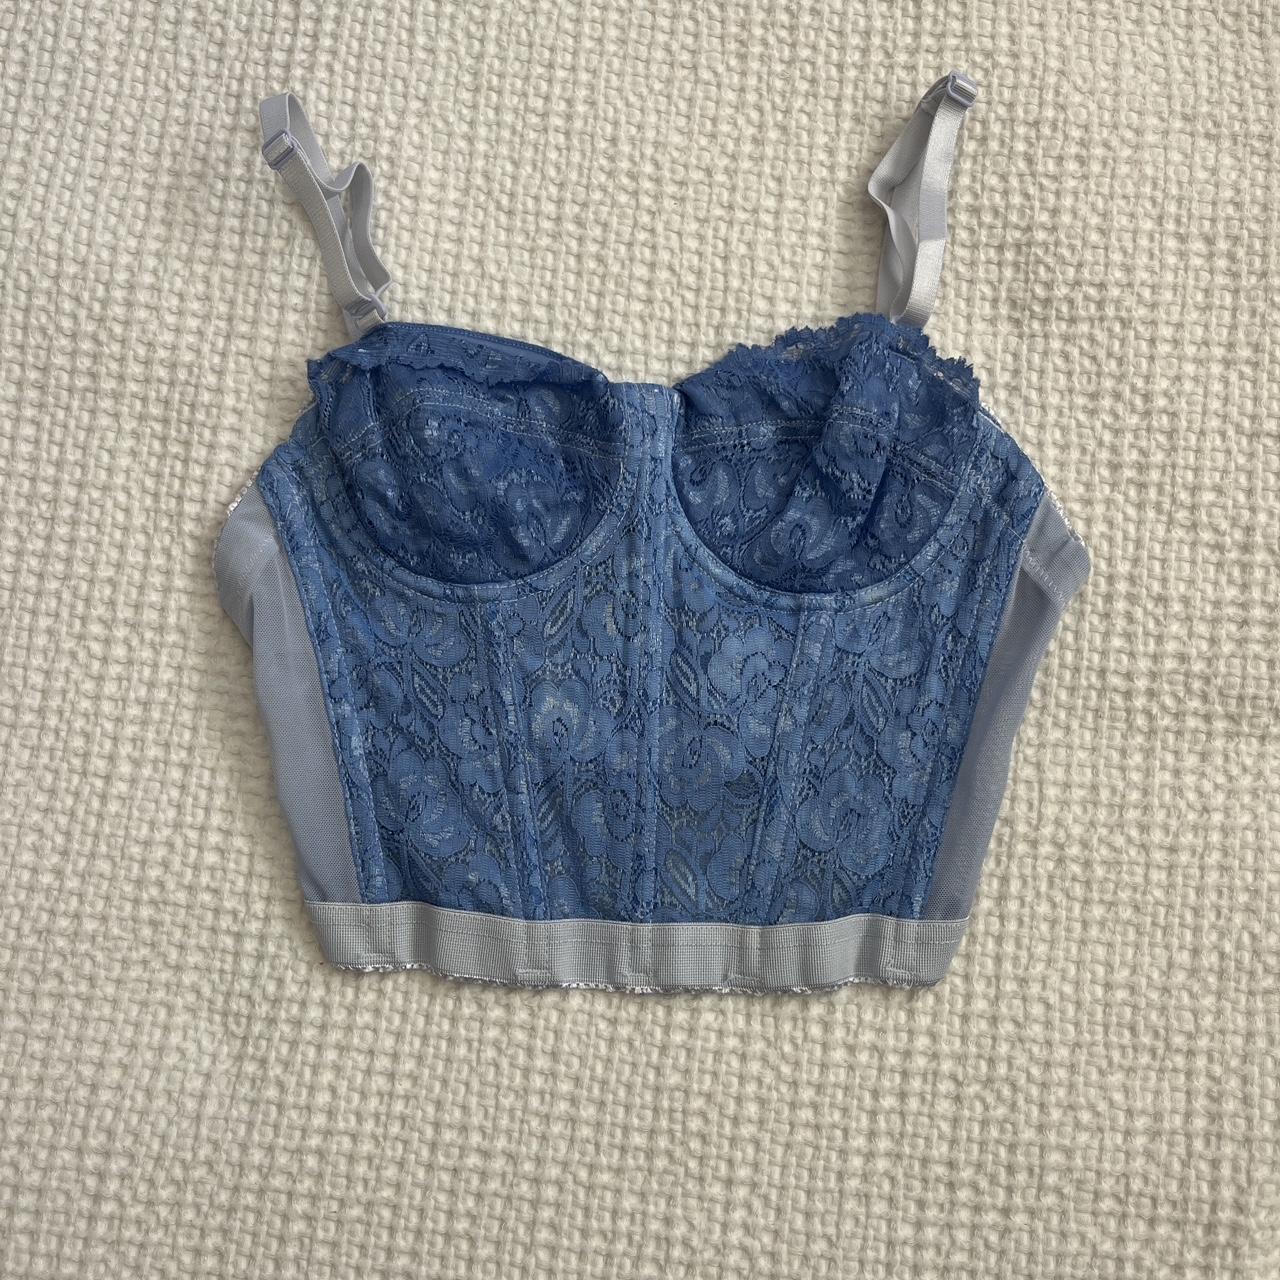 Blue bra-corset - Depop